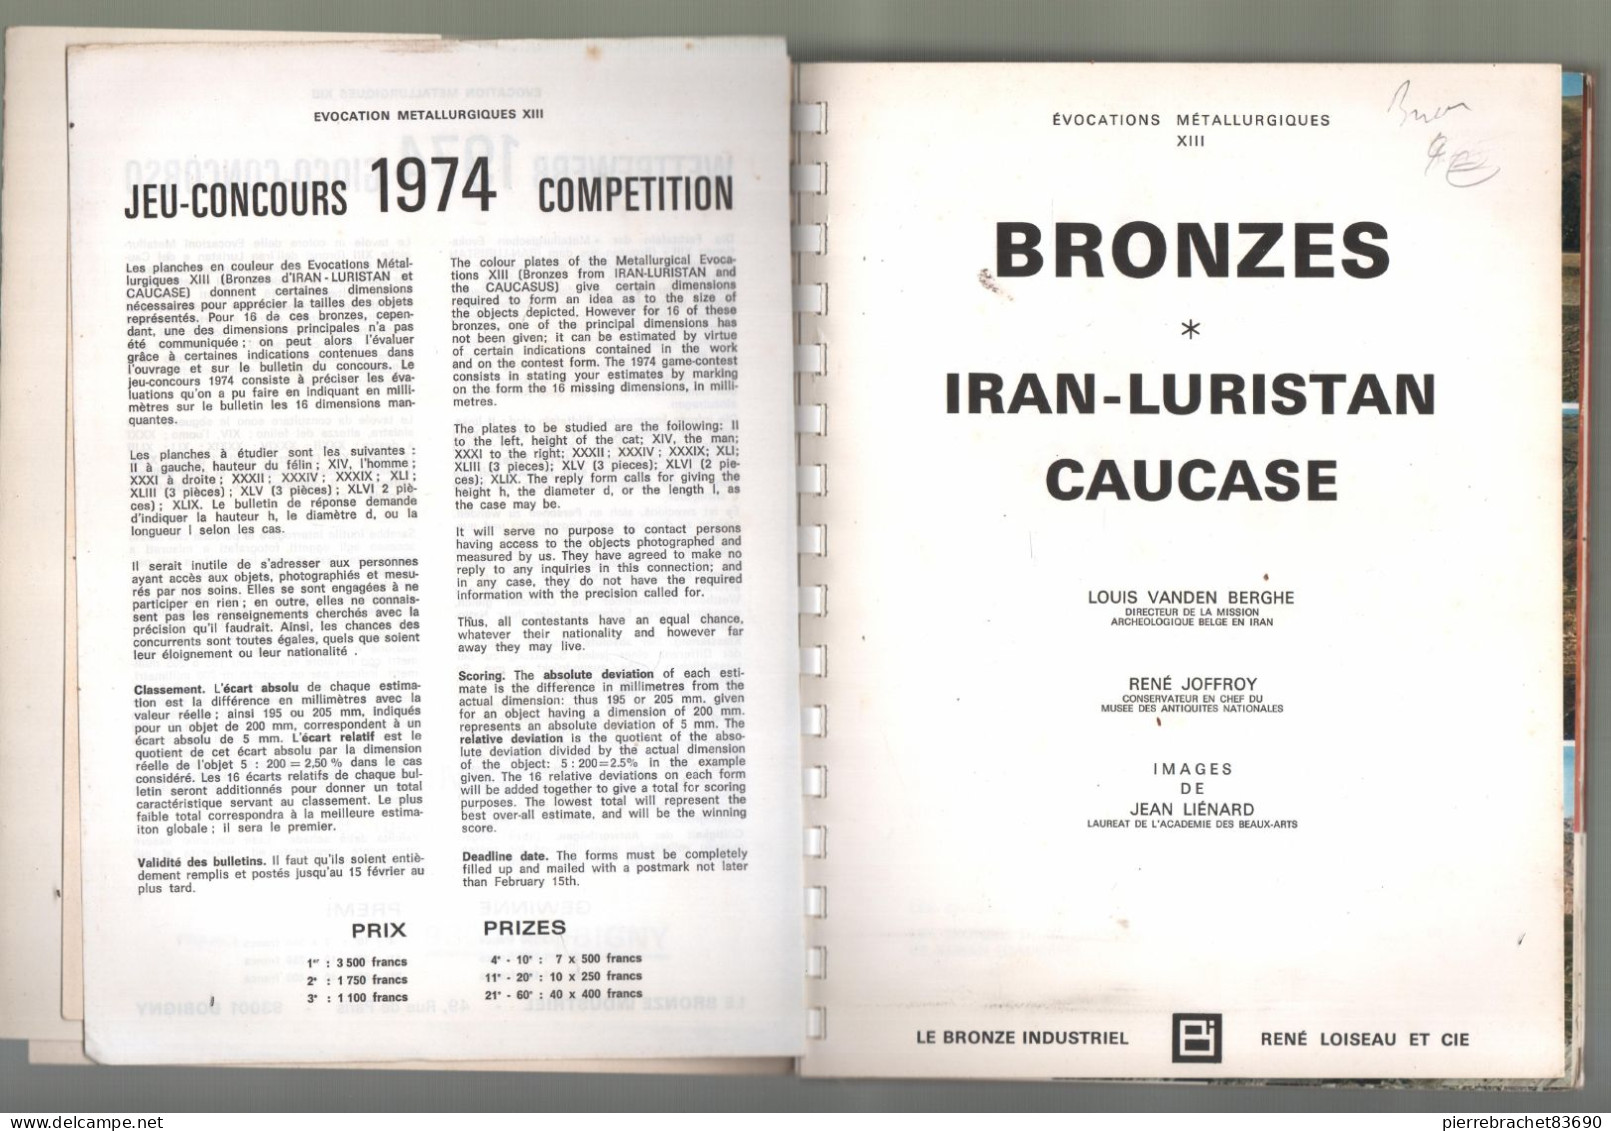 Louis Vanden Berghe / René Joffroy. Bronzes. Iran Luristan Caucase. 1973 - Unclassified